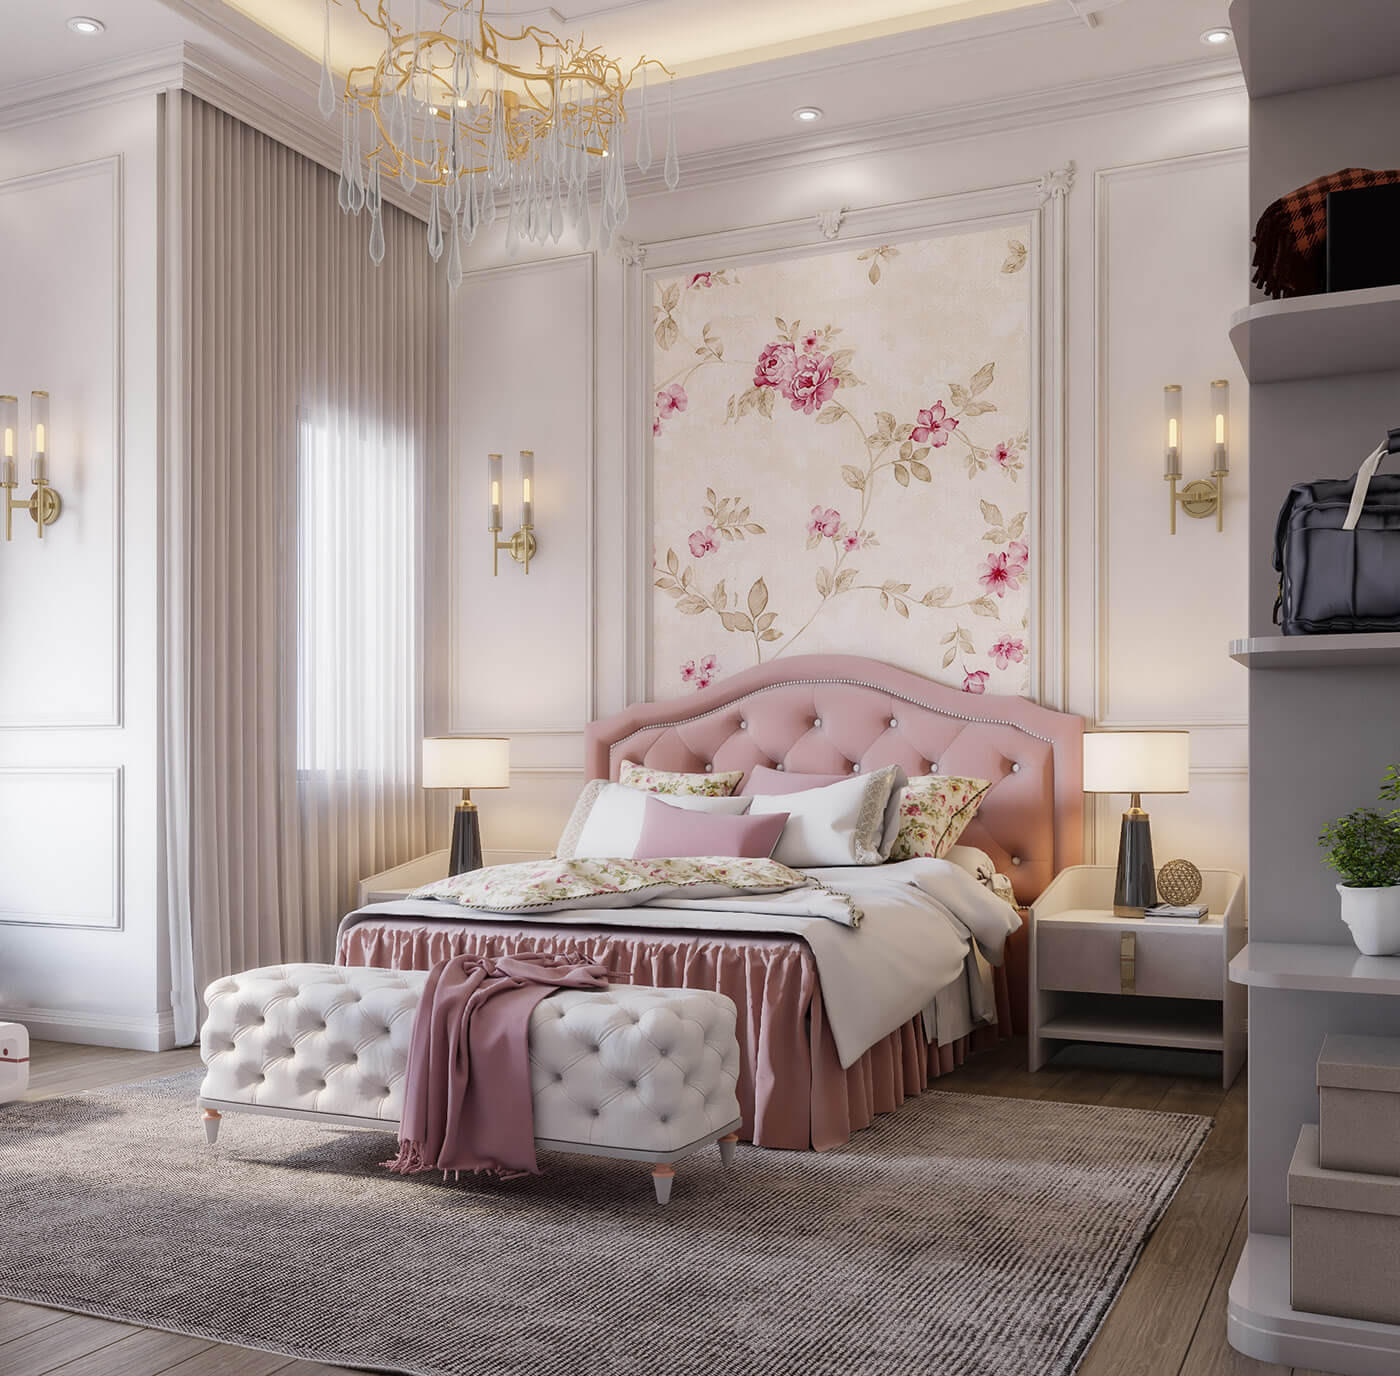 Phòng ngủ sắc hồng cùng với dán tường họa tiết hoa nhẹ nhàng